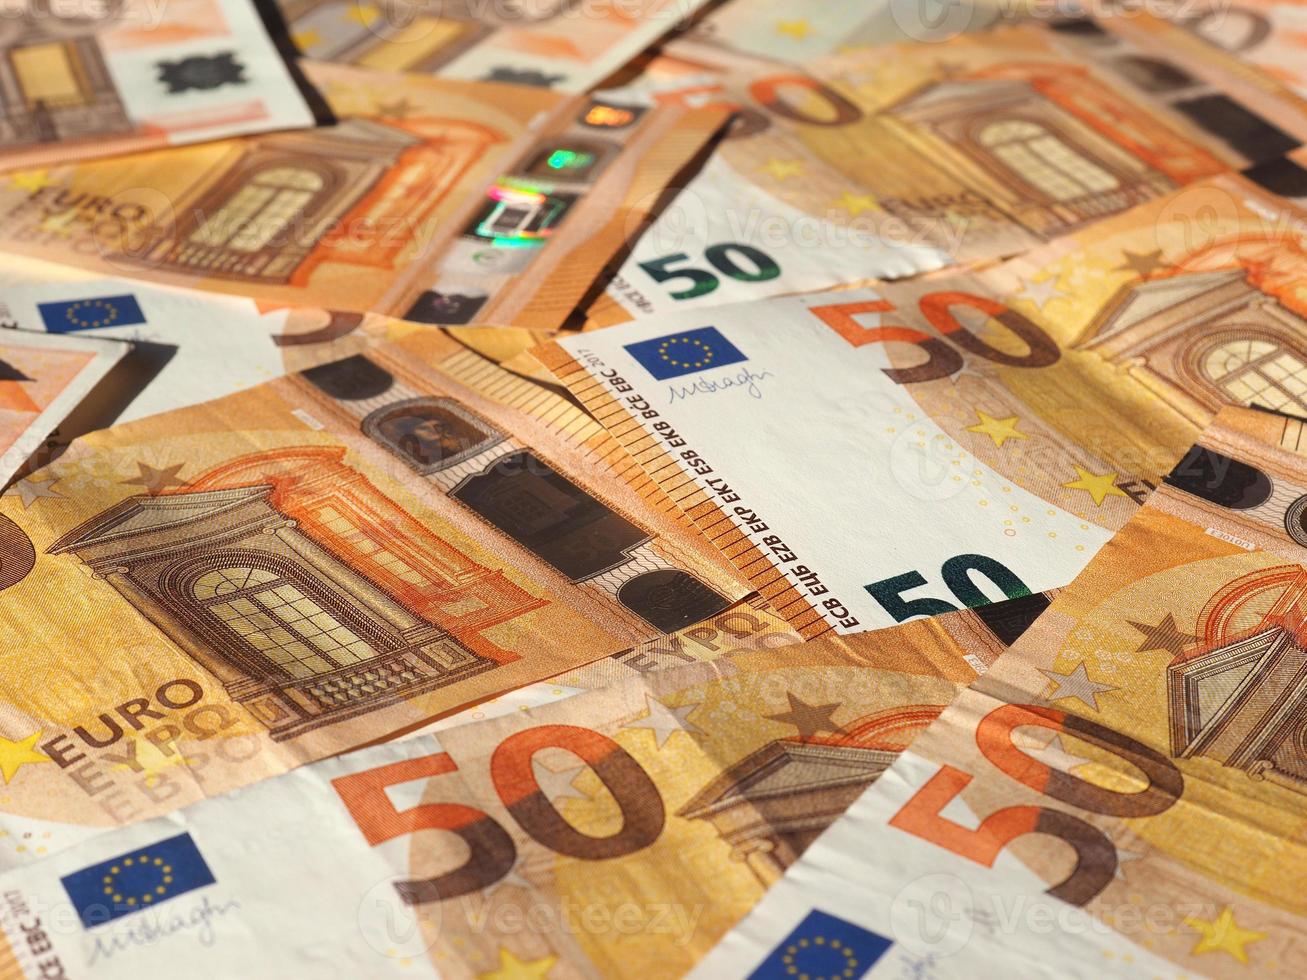 banconote in euro, unione europea foto